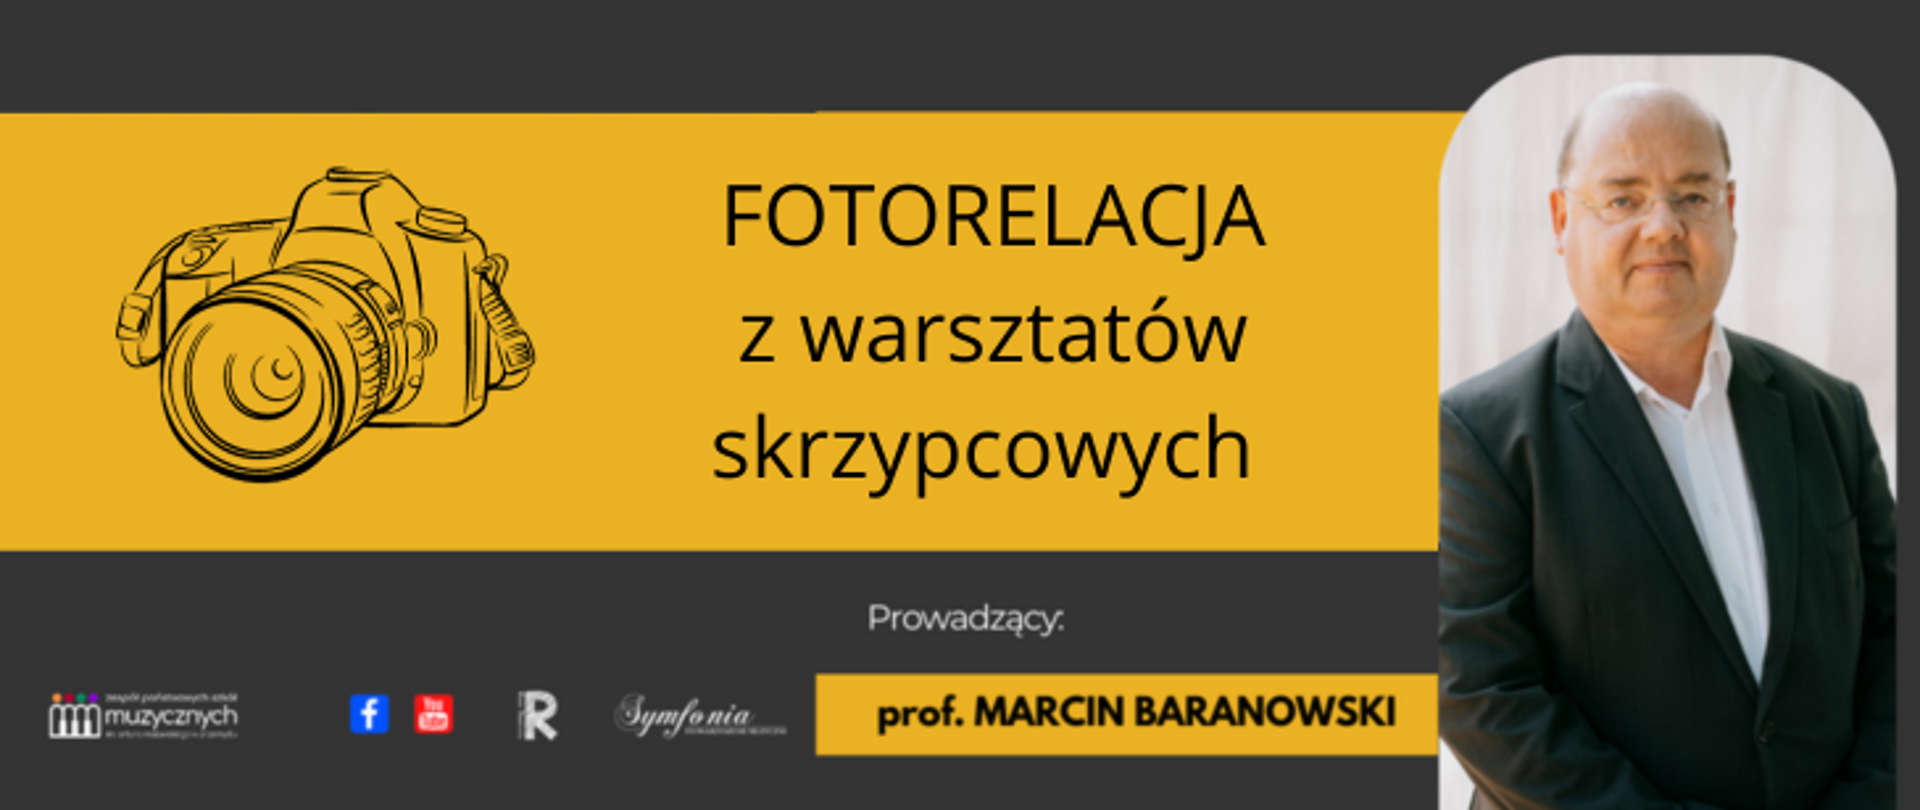 Na szaro żółtym tle z prawej strony znajduje się zdjęcie Marcina Baranowskiego, z lewej jest grafika aparatu fotograficznego. Po środku widnieje napis: FOTORELACJA z warsztatów skrzypcowych, prowadzący prof. Marcin Baranowski. Na dole znajdują się loga szkoły, FB, YouTube, Rady Rodziców ii Symfonii.